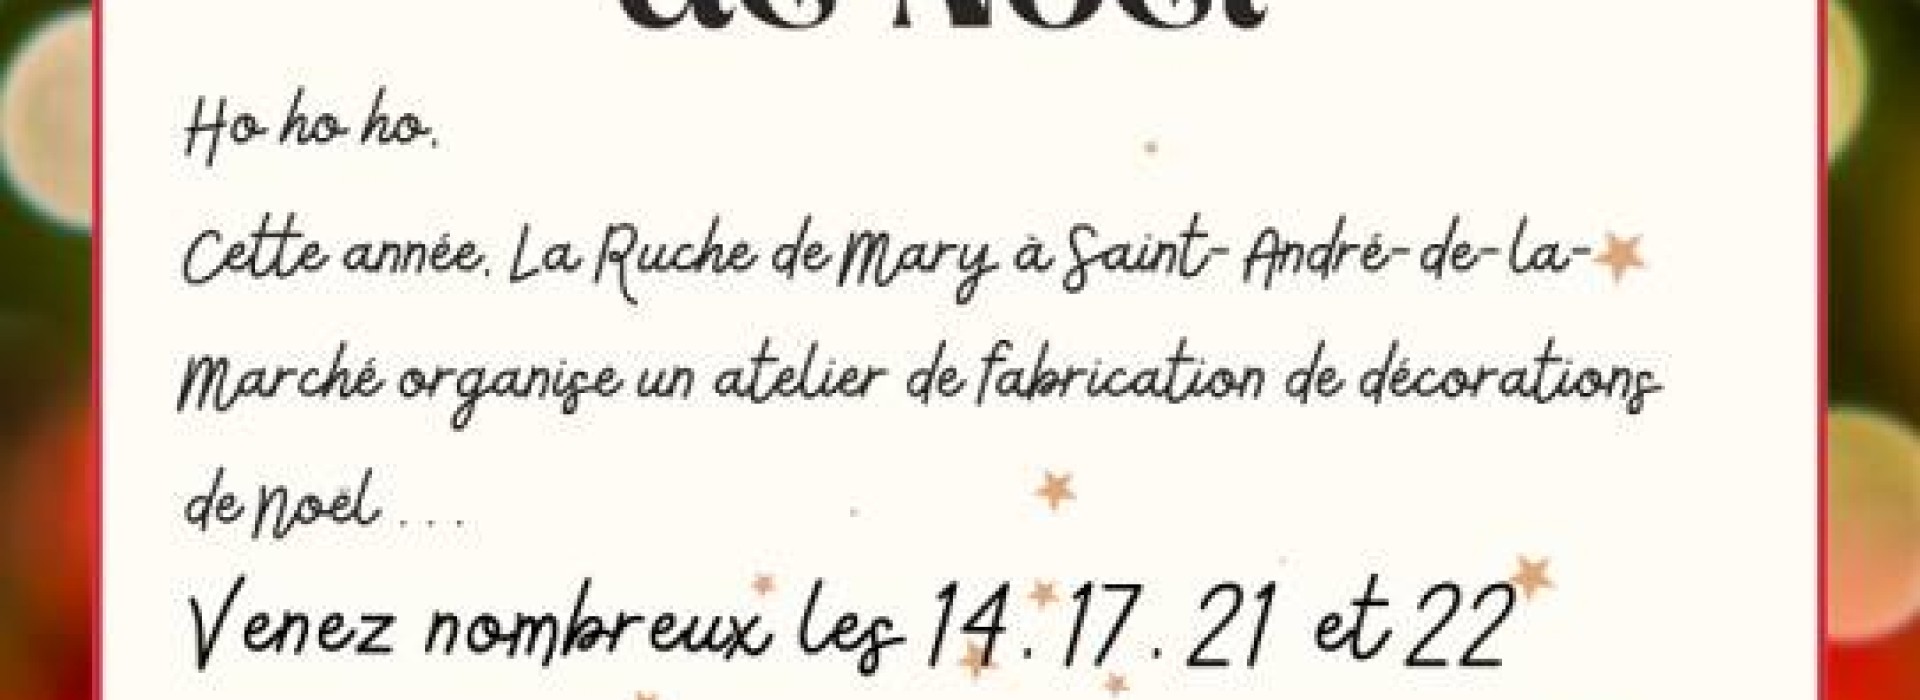 FABRICATION DE DECORATION DE NOEL A LA RUCHE DE MARY: Fiestas y grandes